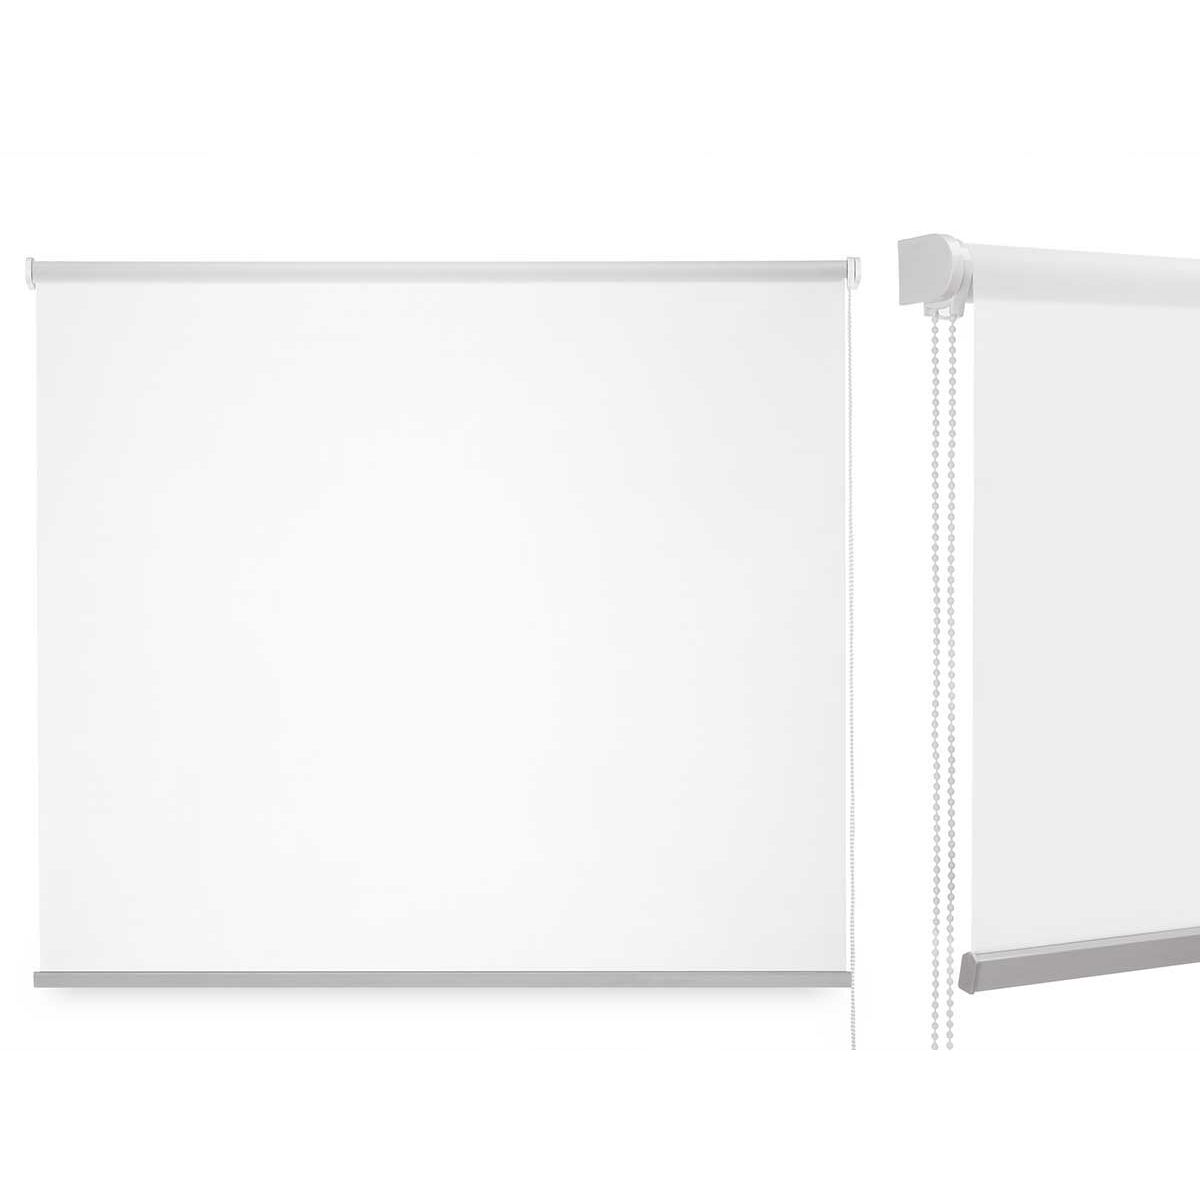 Rullegardiner 180 x 180 cm Hvid Klæde Plastik (6 enheder)